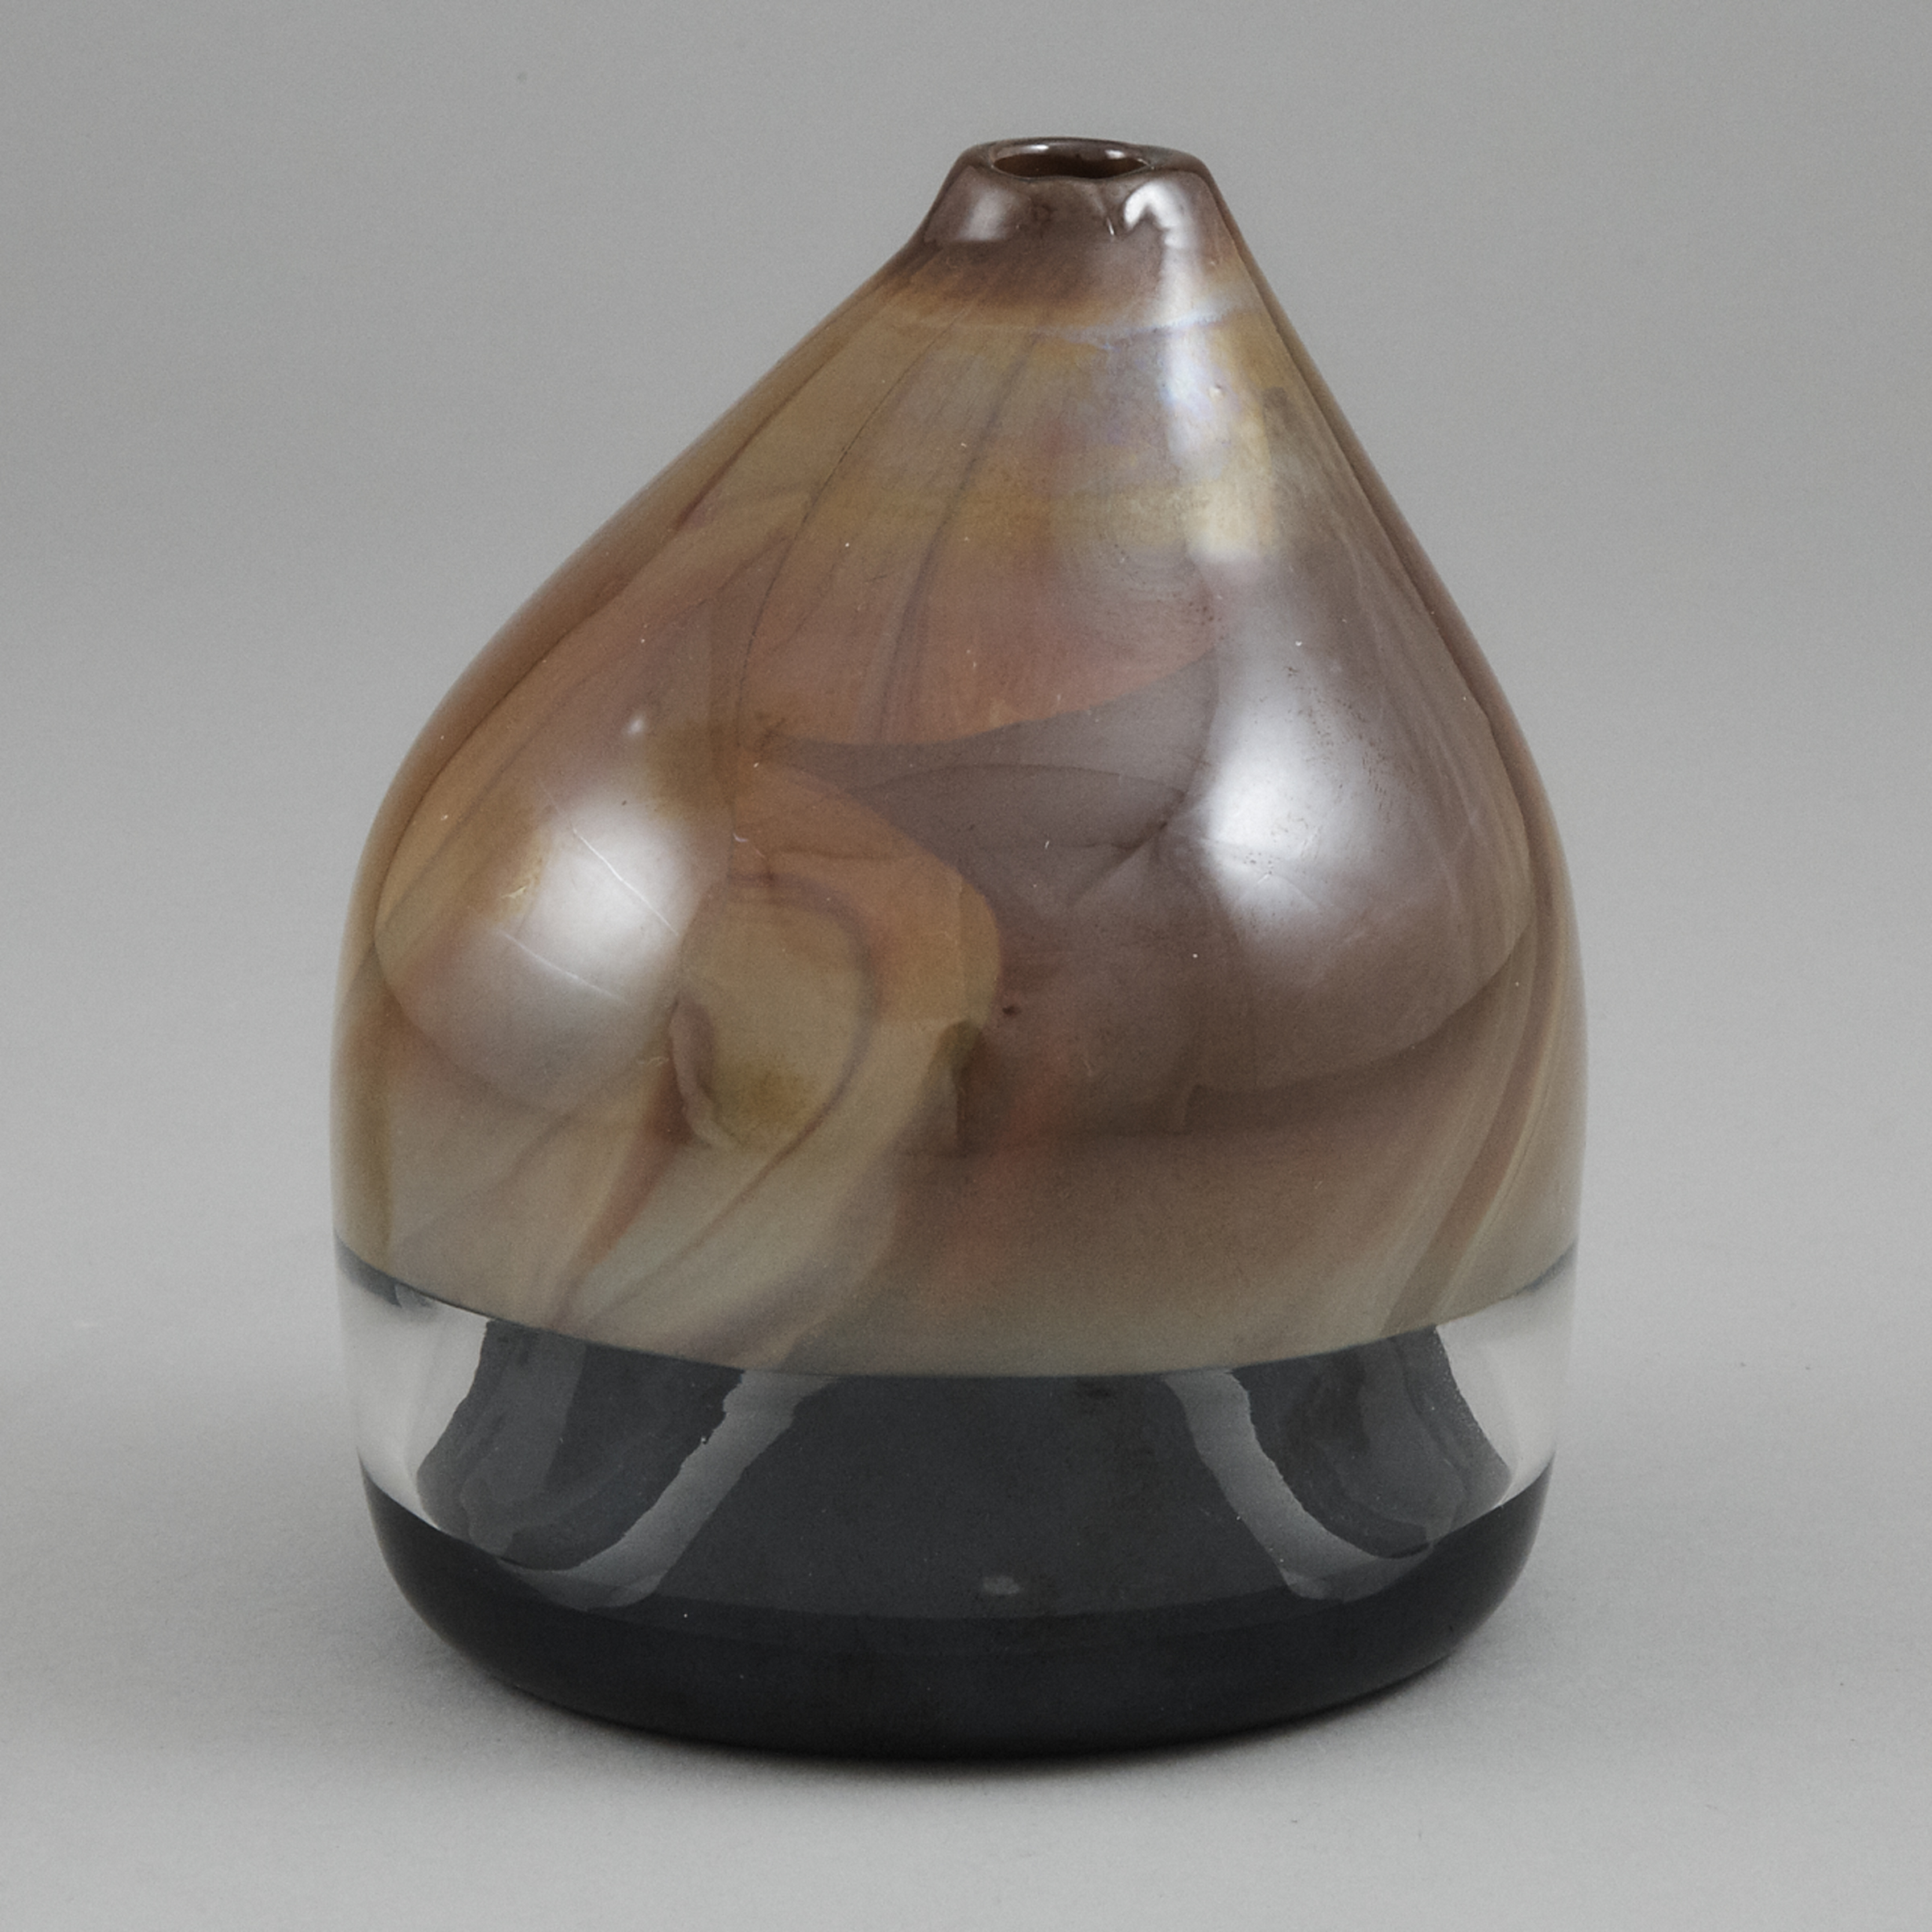 'Cappello del Doge' Incalmo Glass Vase, attributed to Venini and Thomas Stearns, c.1962